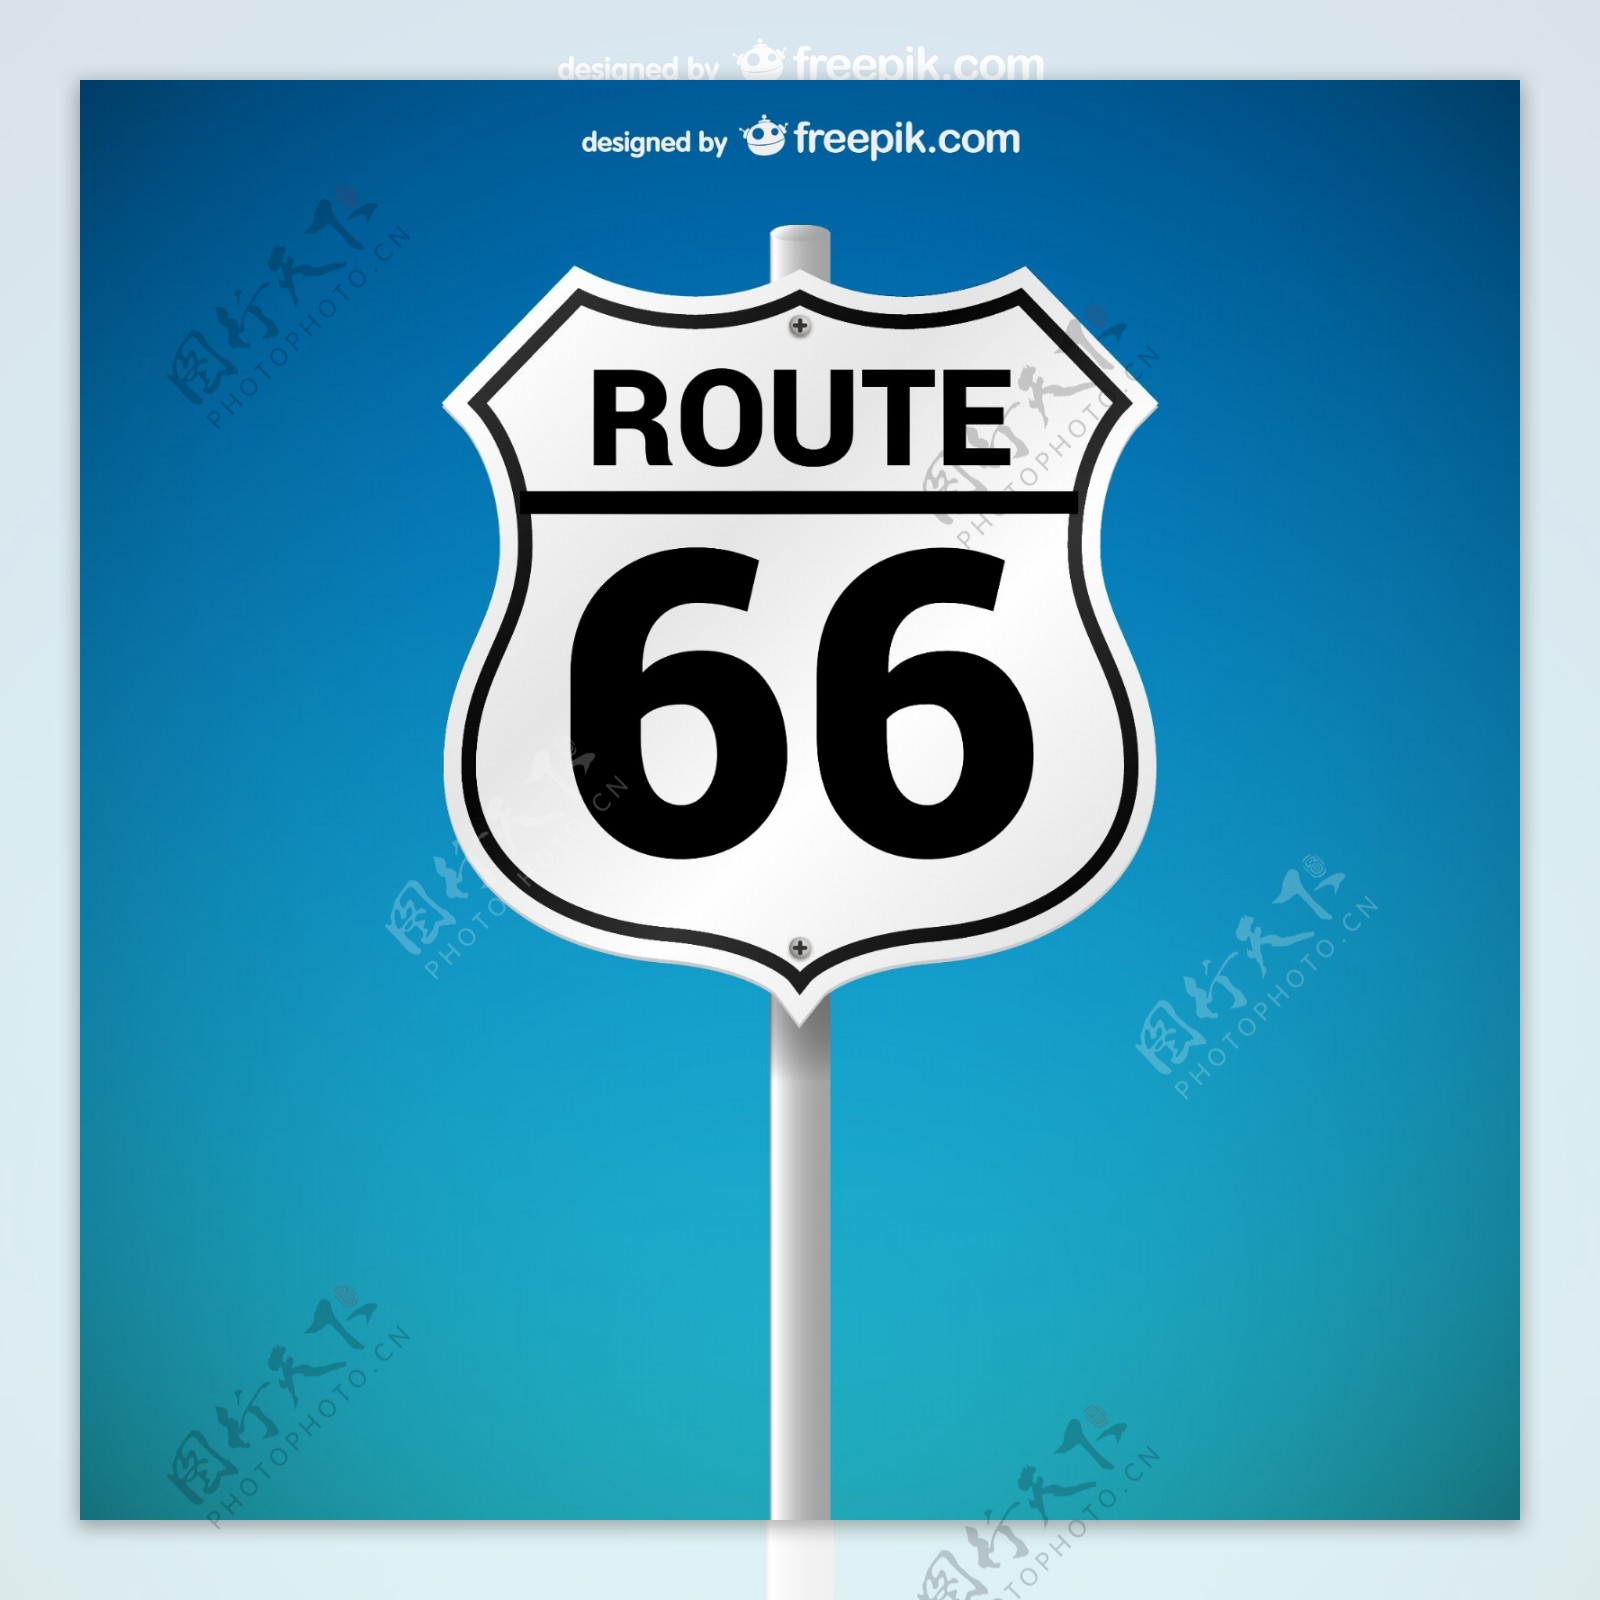 美国66号公路路牌矢量素材